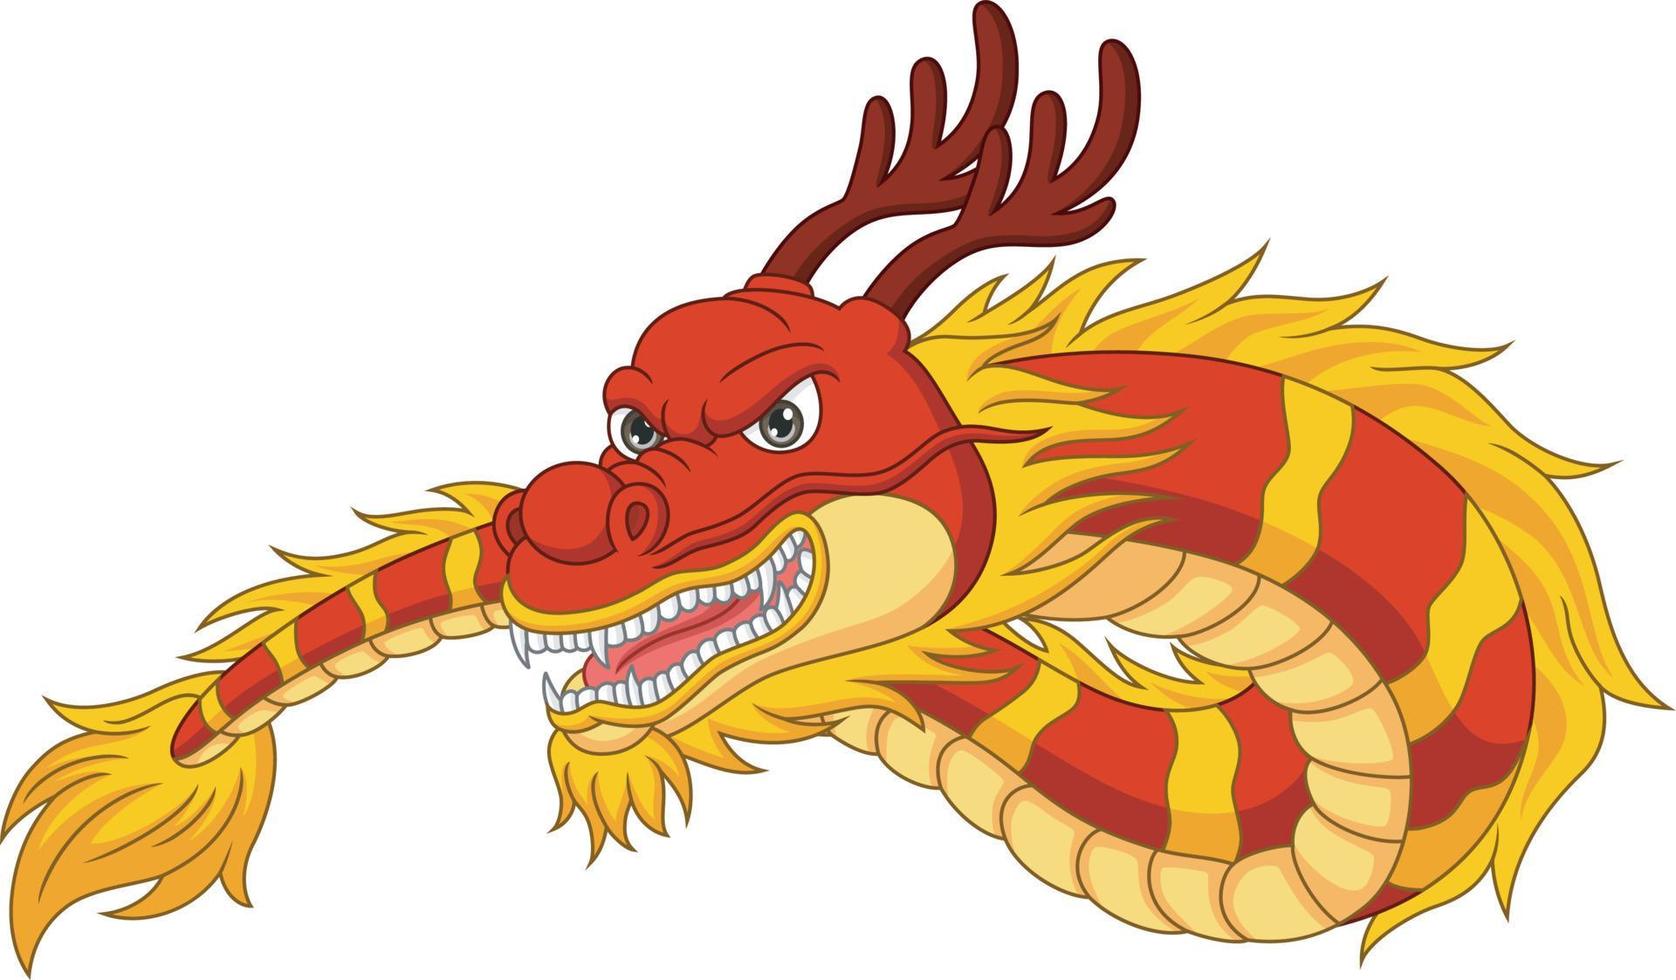 Cartoon chinesischer roter Drache auf weißem Hintergrund vektor